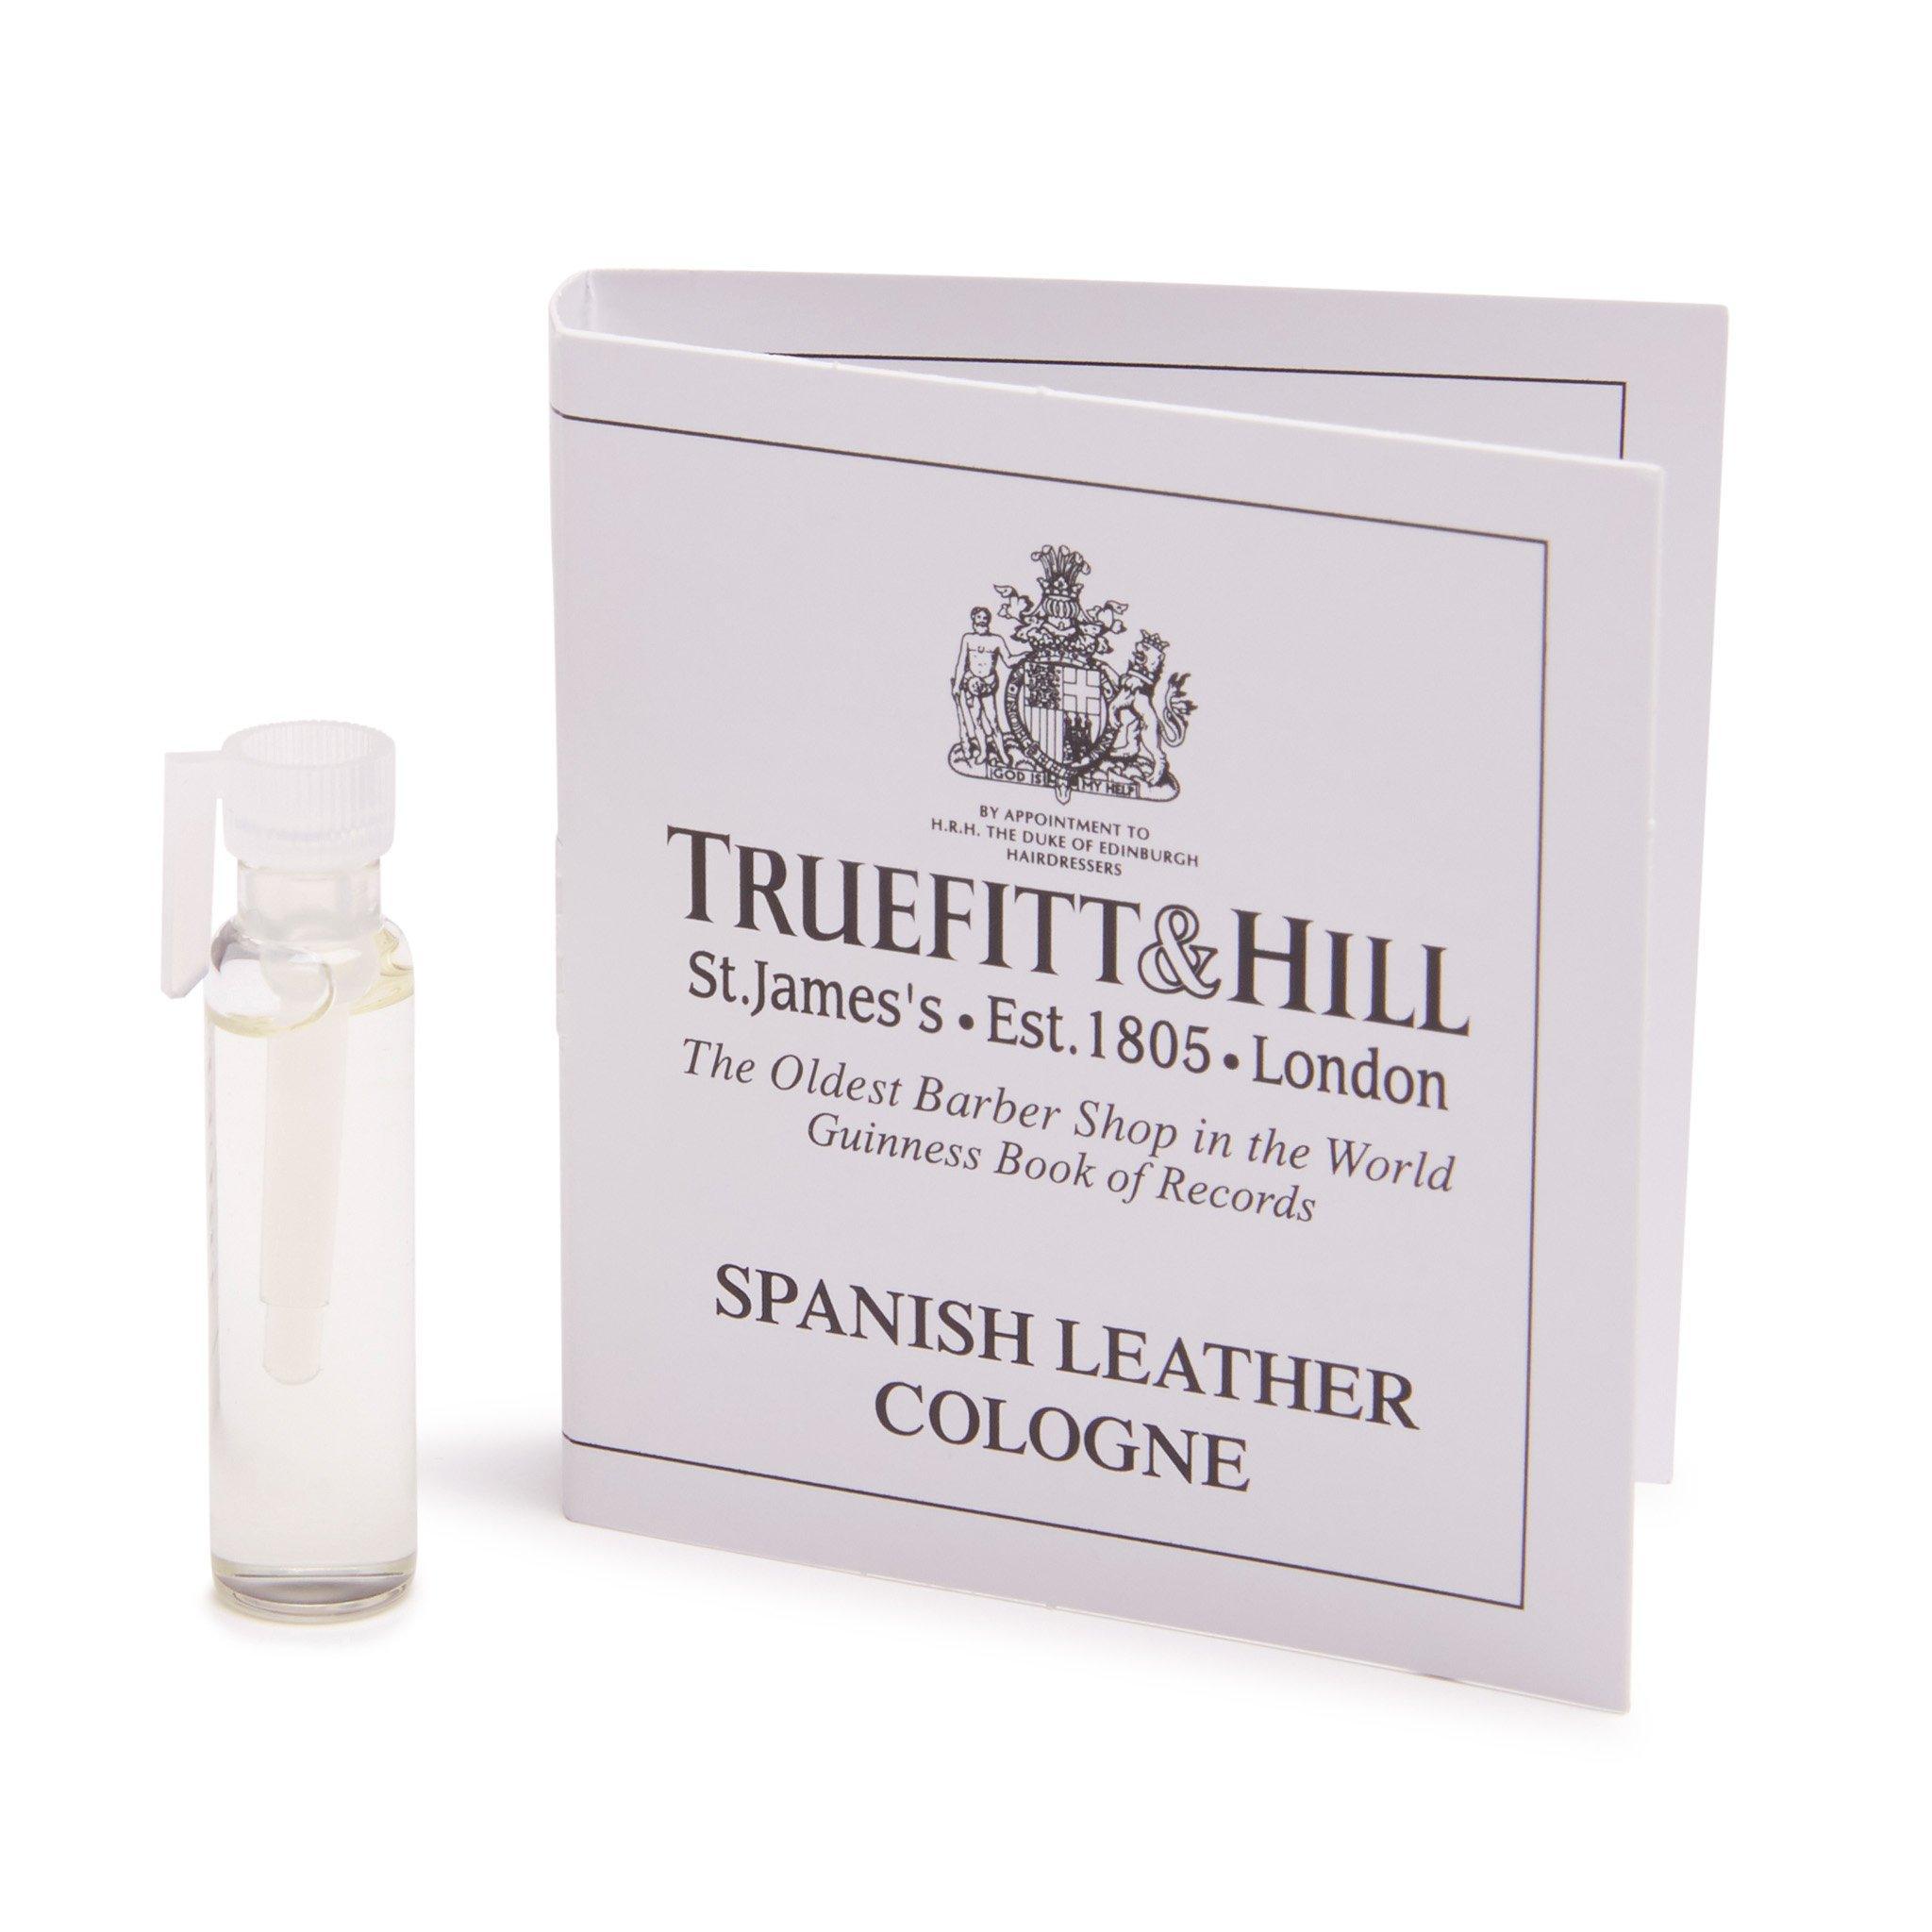 Truefitt & Hill Cologne vareprøve Spanish Leather